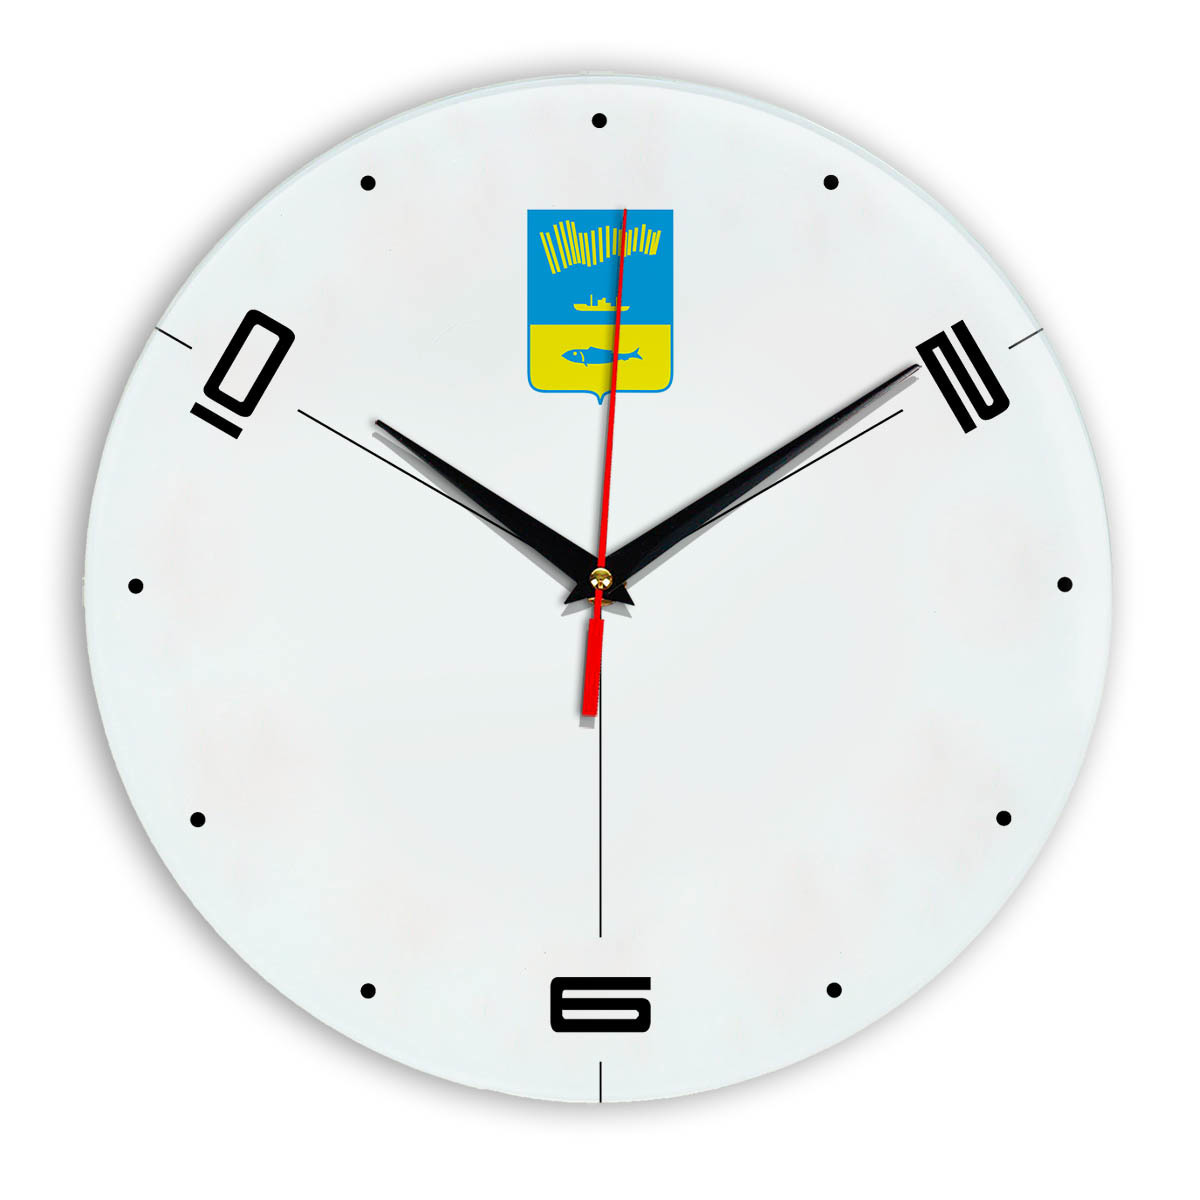 Часы настенные Мурманск. Сувенирная продукция настенные часы Мурманск. Часы из Мурманска. Машина времени Мурманск часы. Магазин часы мурманск